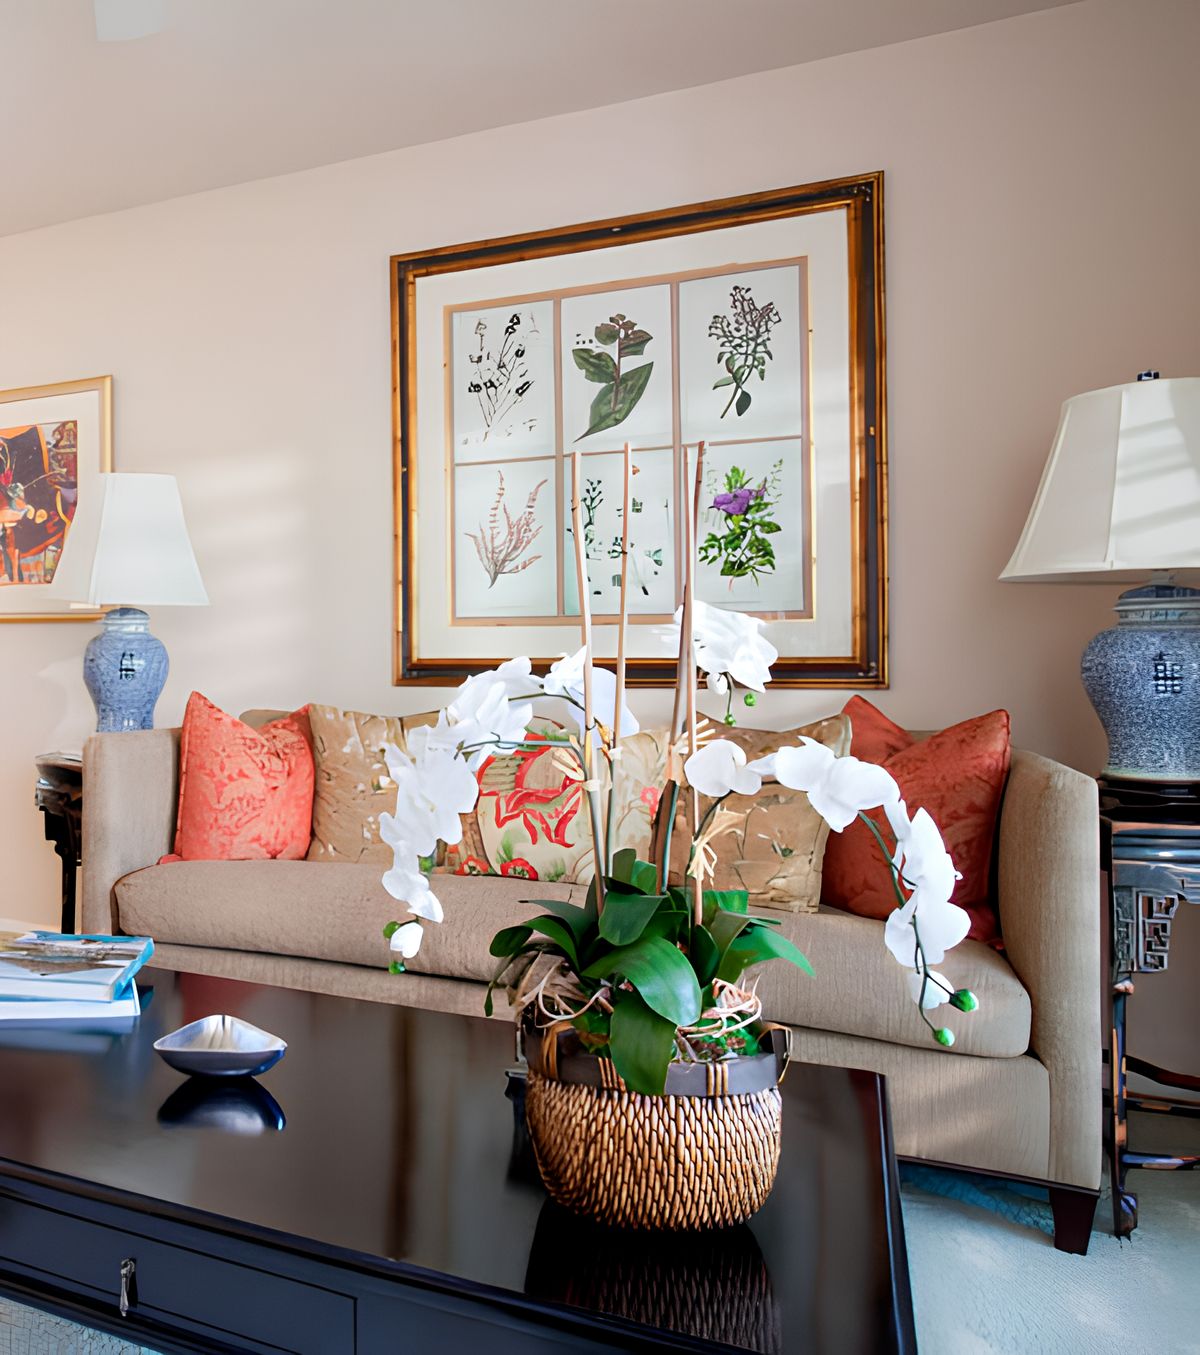 Senior living community, The Carlotta, featuring elegant home decor in Ivy Signature Living room.